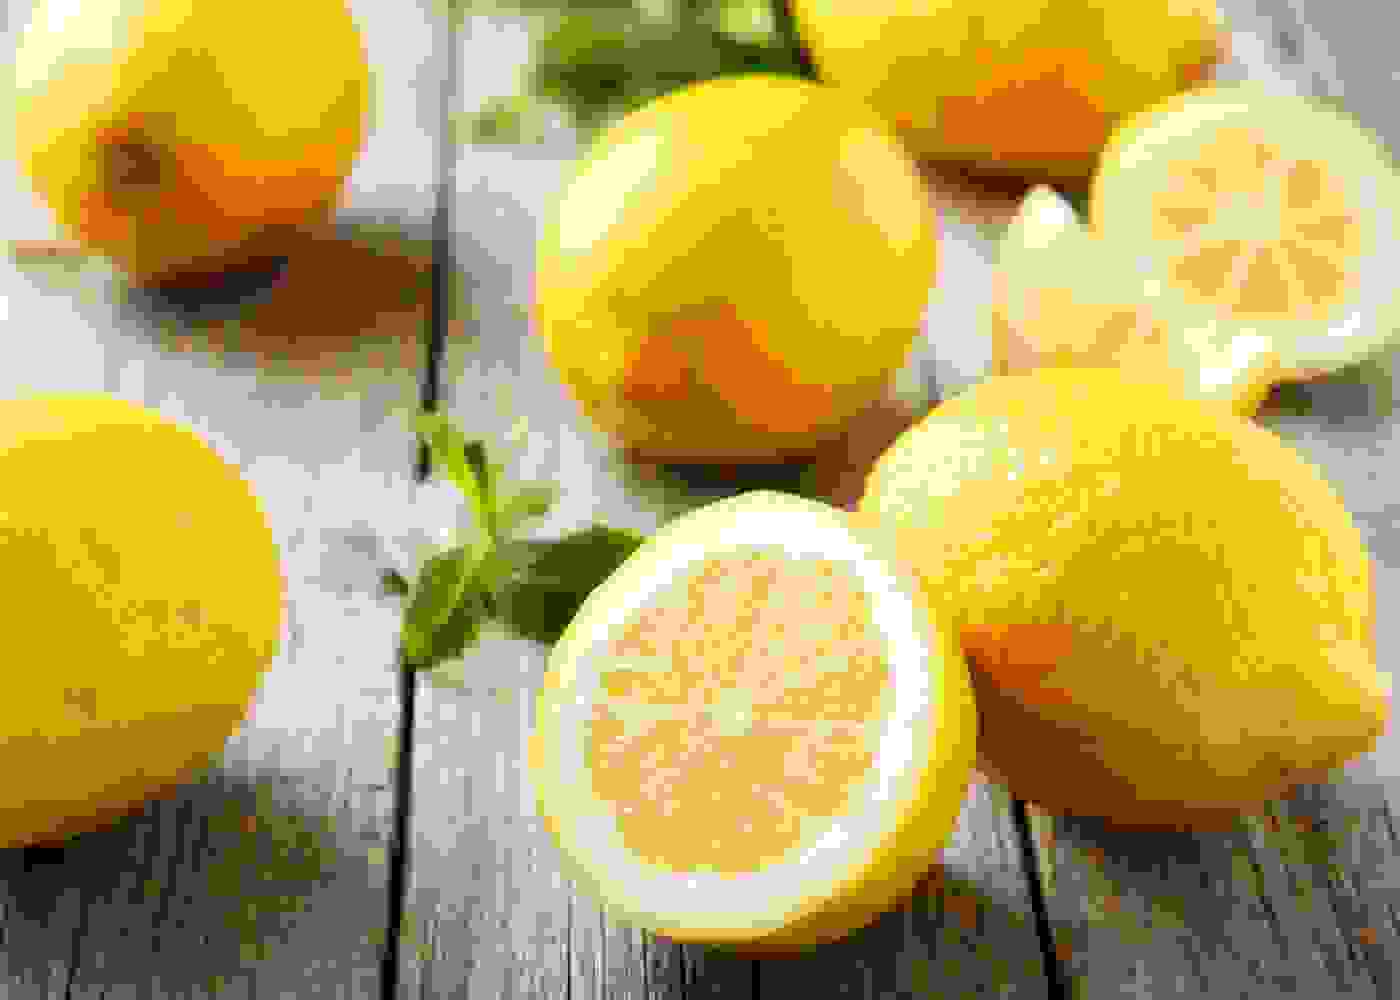 الليمون الحامض